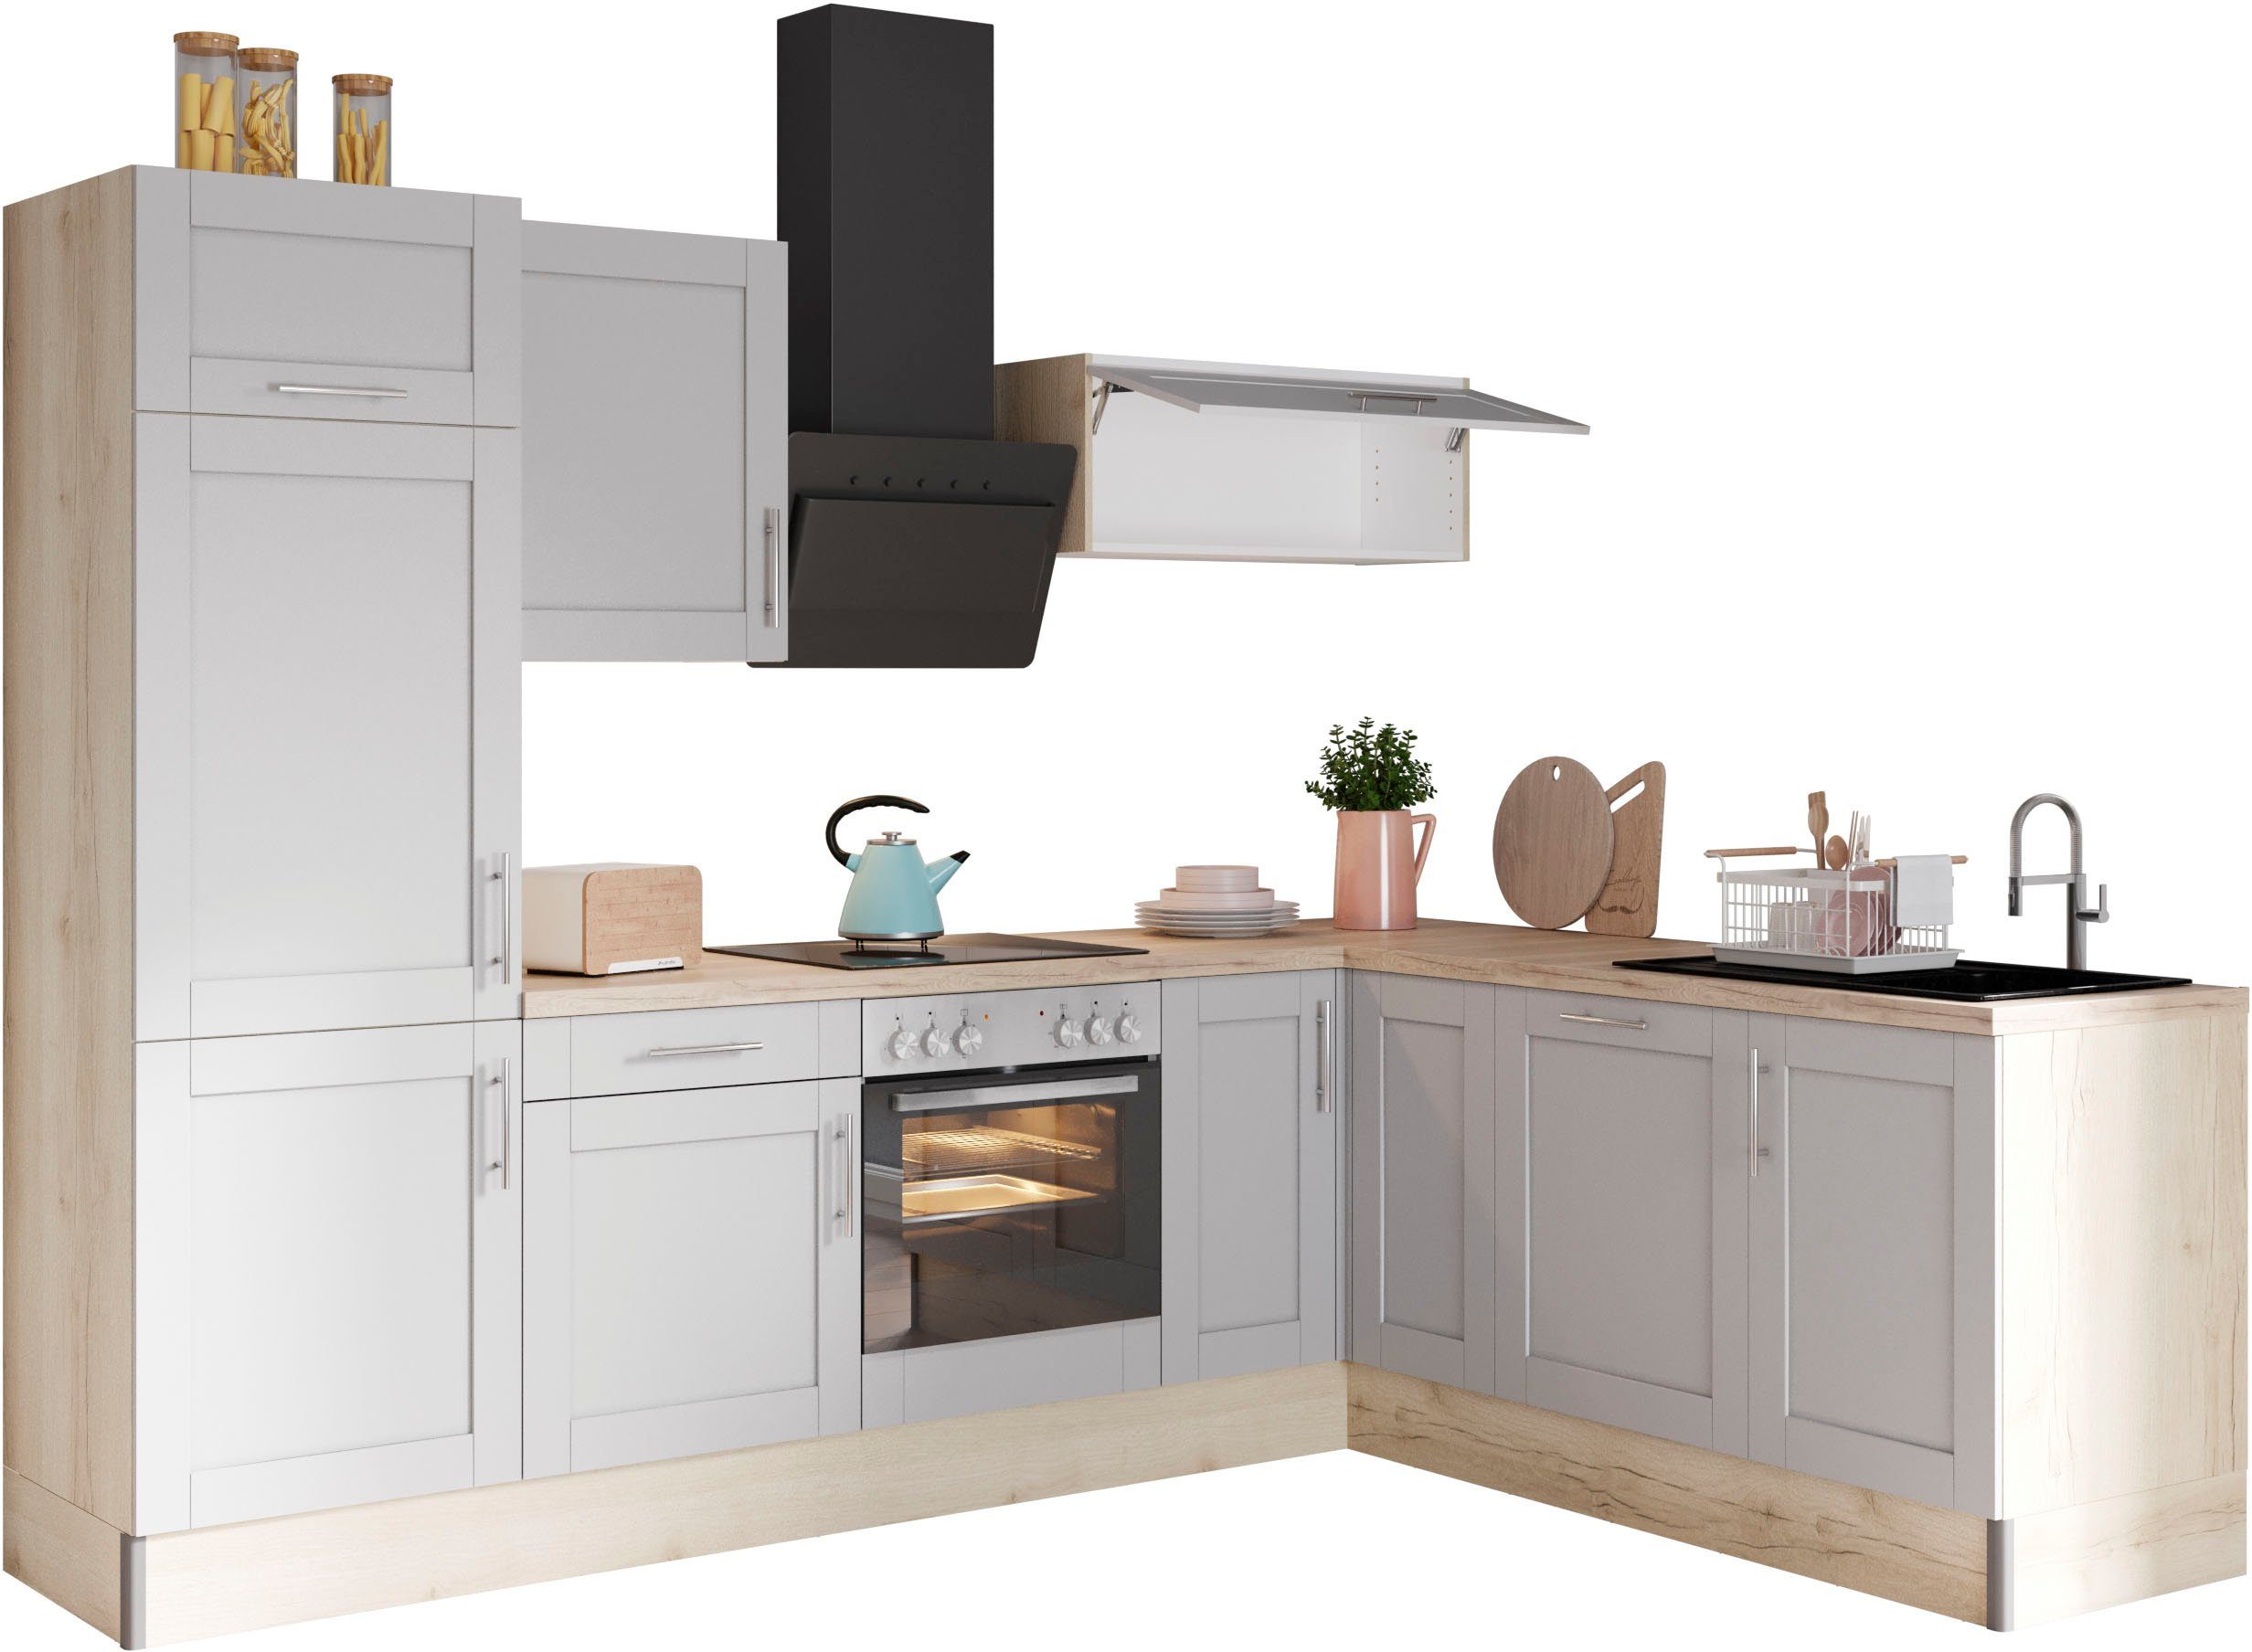 OPTIFIT Küche Ahus, 200 x 270 cm breit, ohne E-Geräte, Soft Close Funktion, MDF Fronten grau